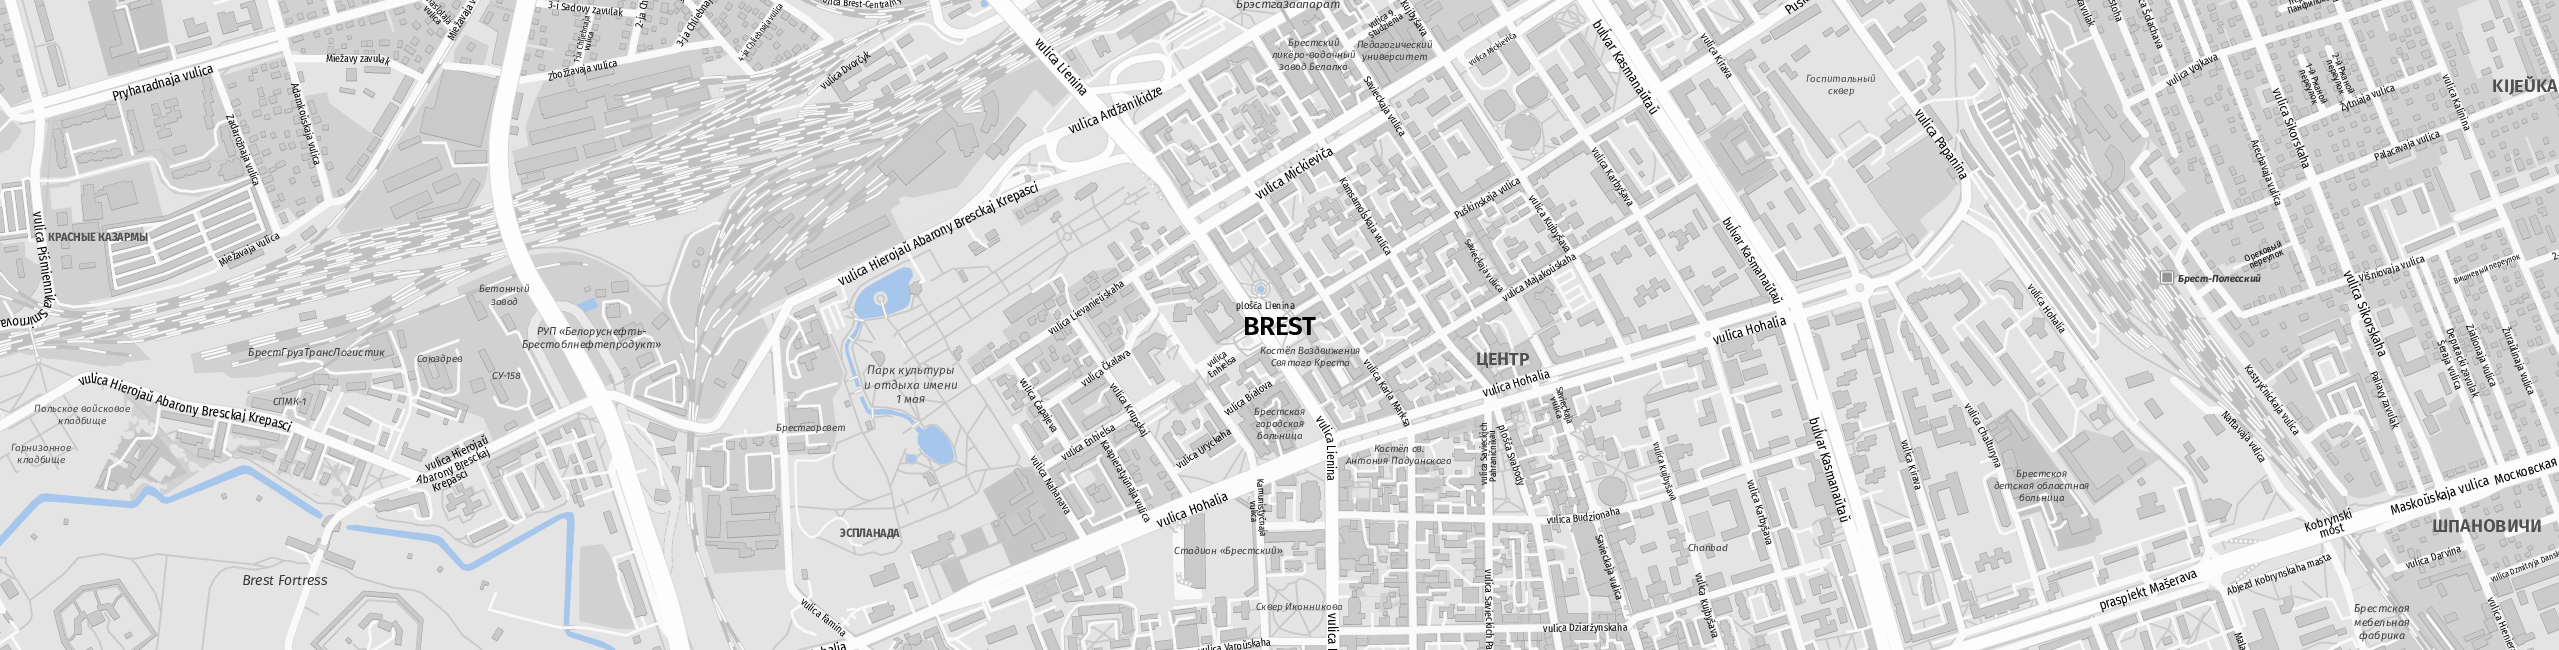 Stadtplan Brest zum Downloaden.